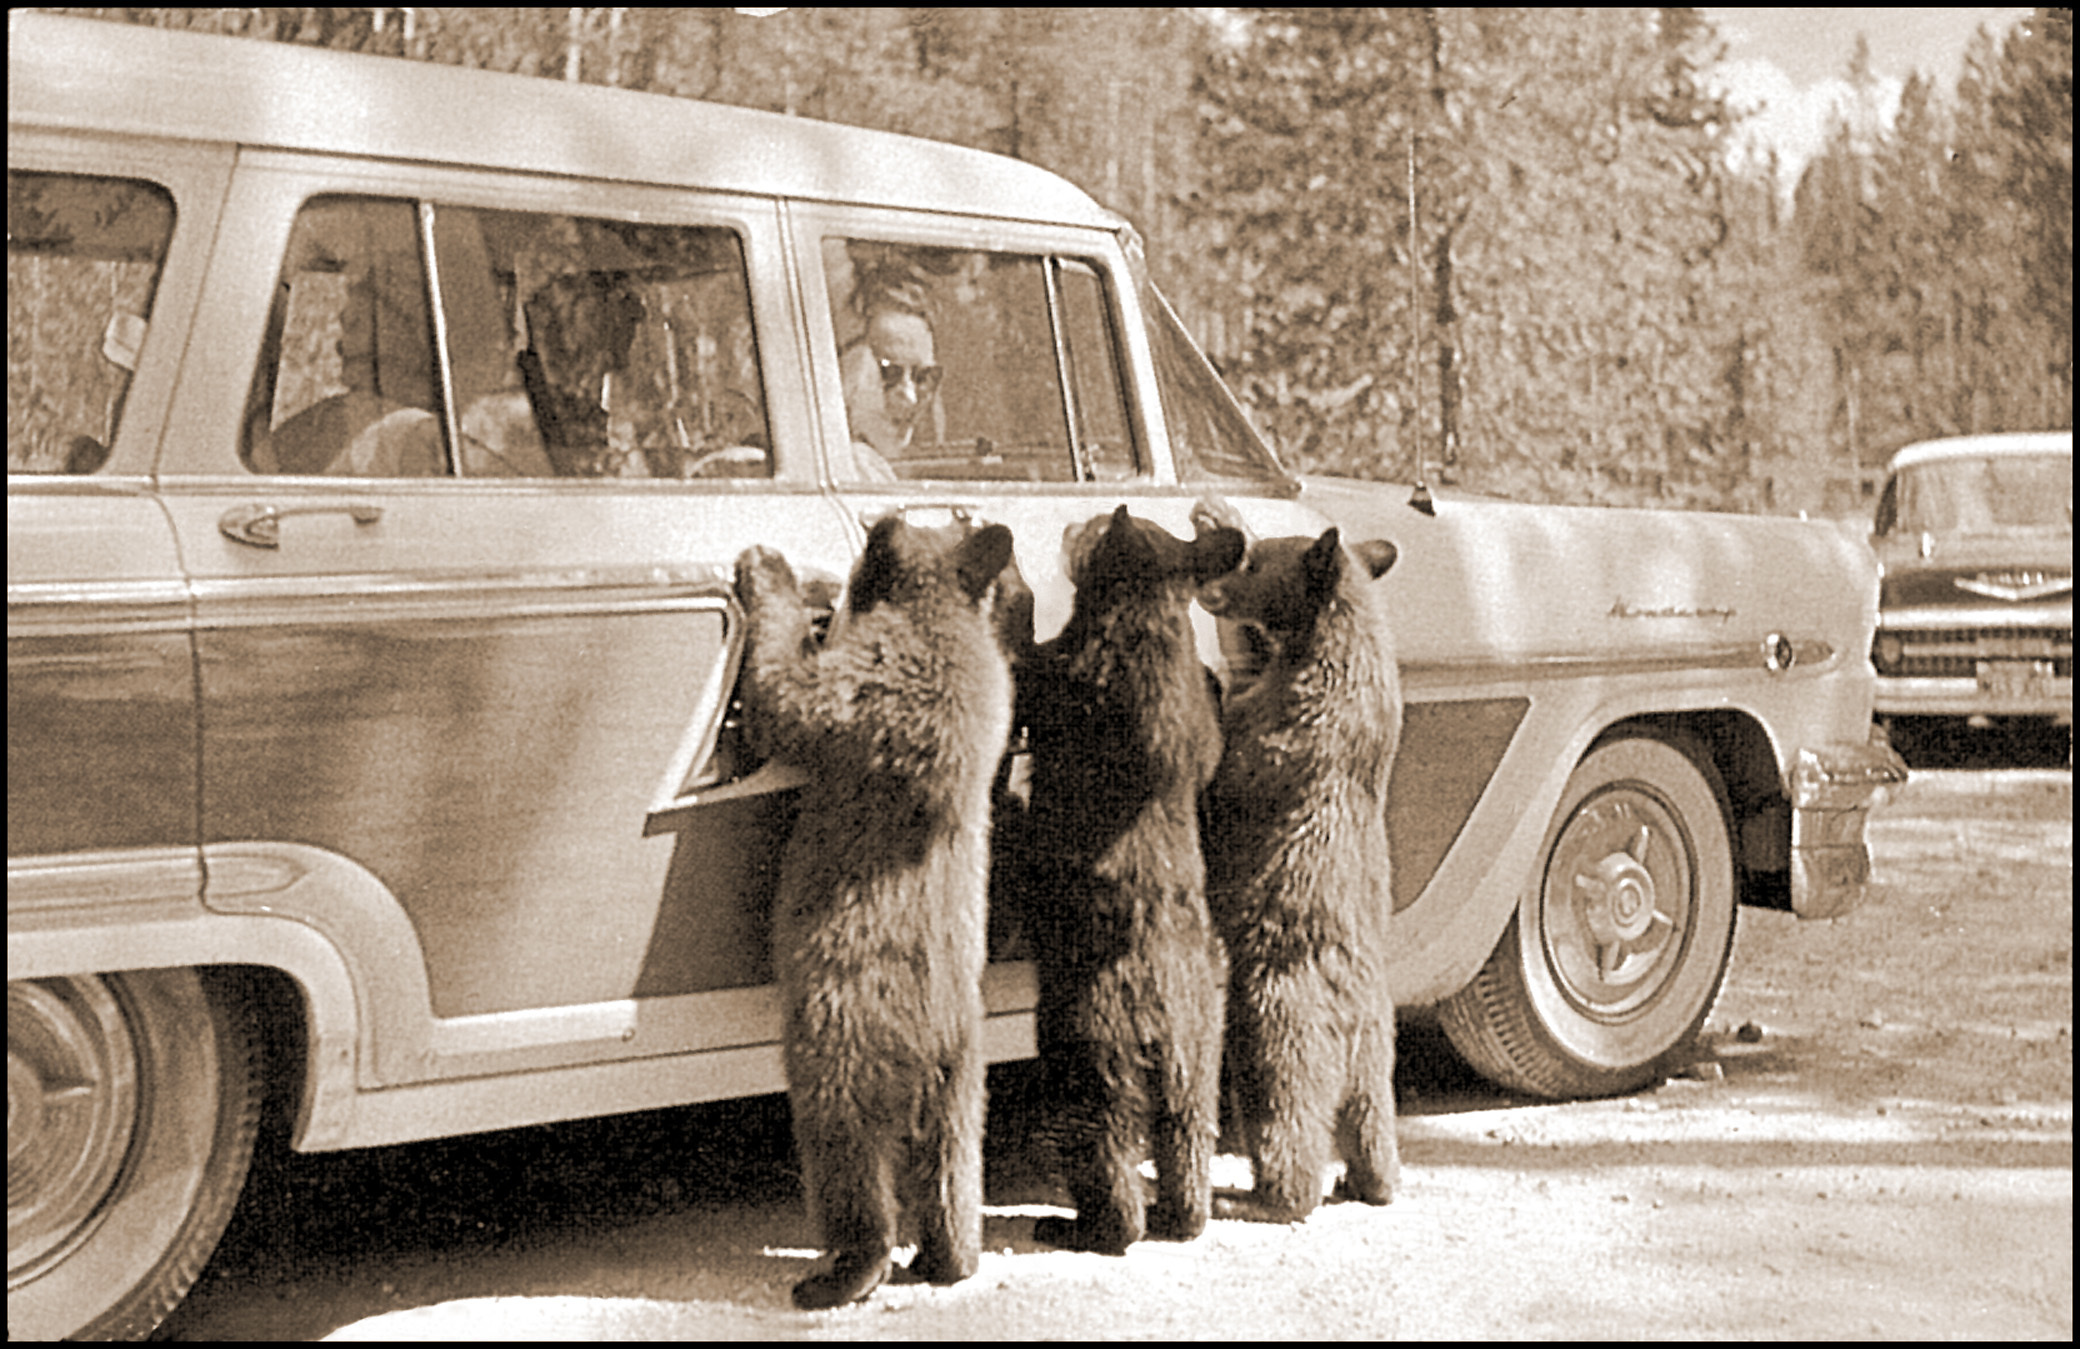 three bears lean against a vintage car